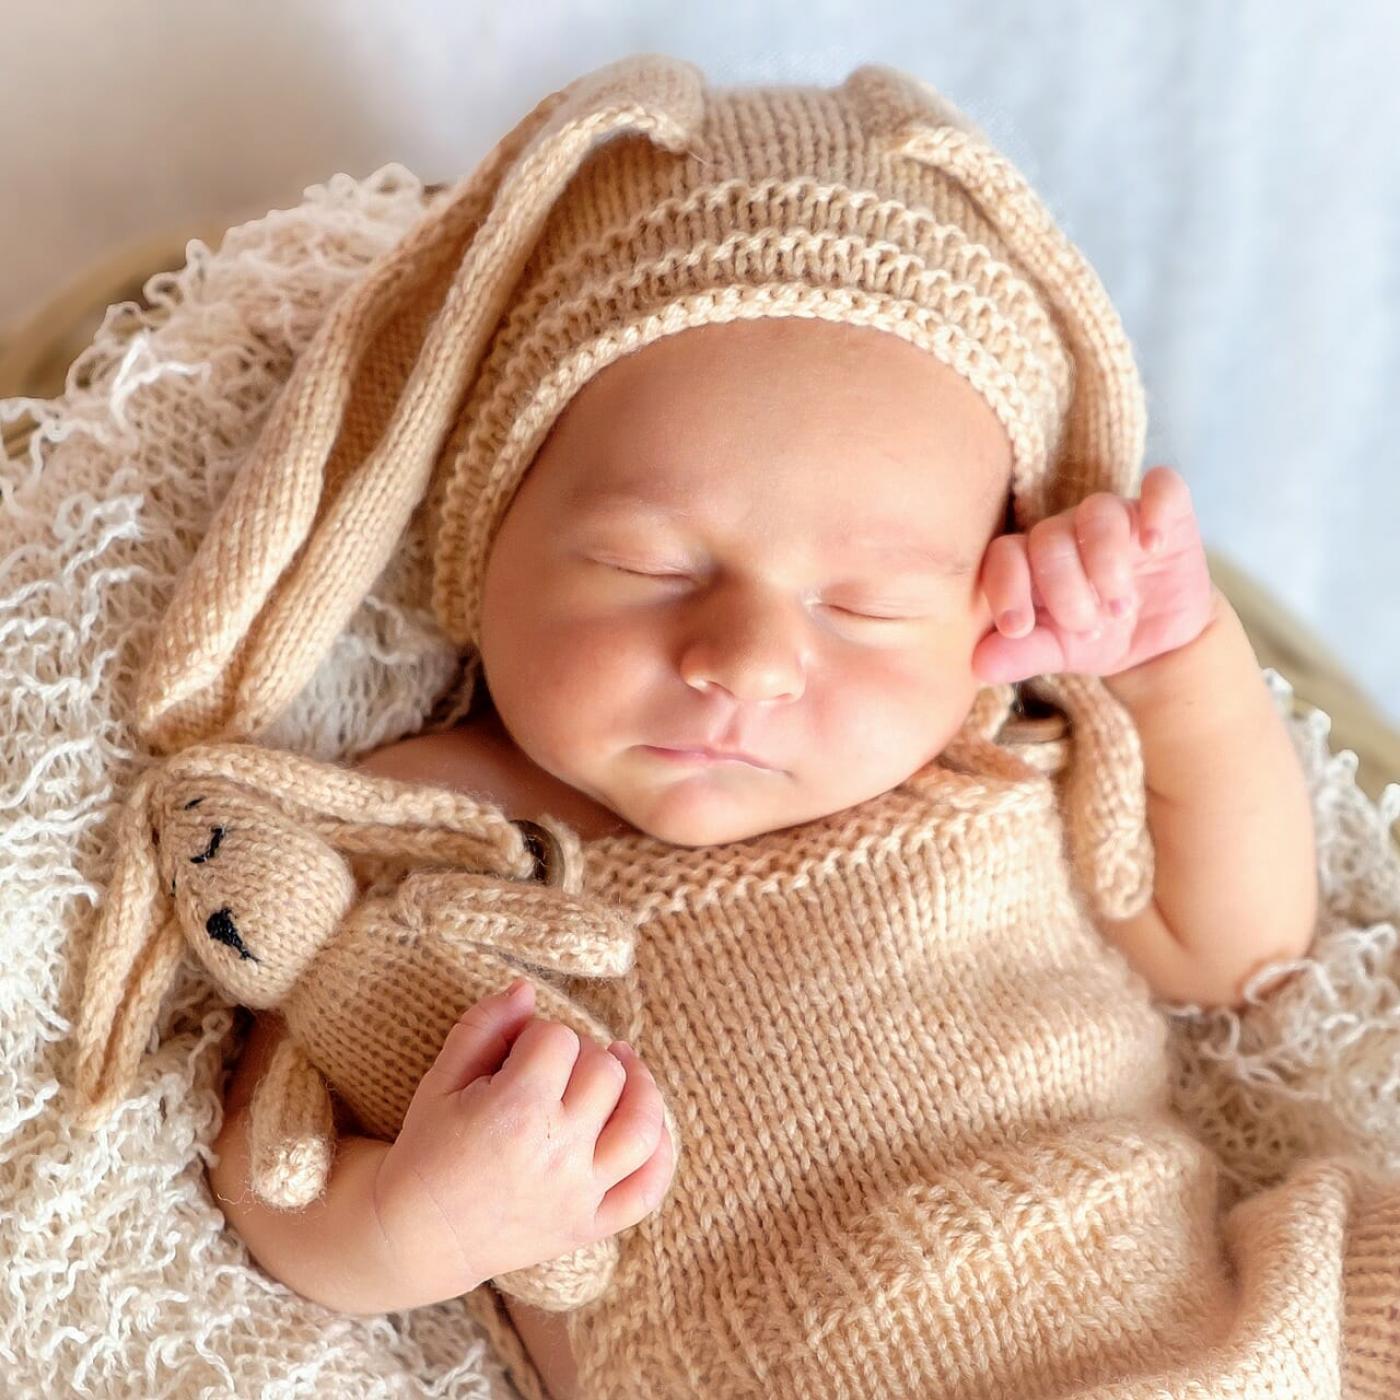 Le Dico des Rêves : Que signifie rêver de bébé dans son lit